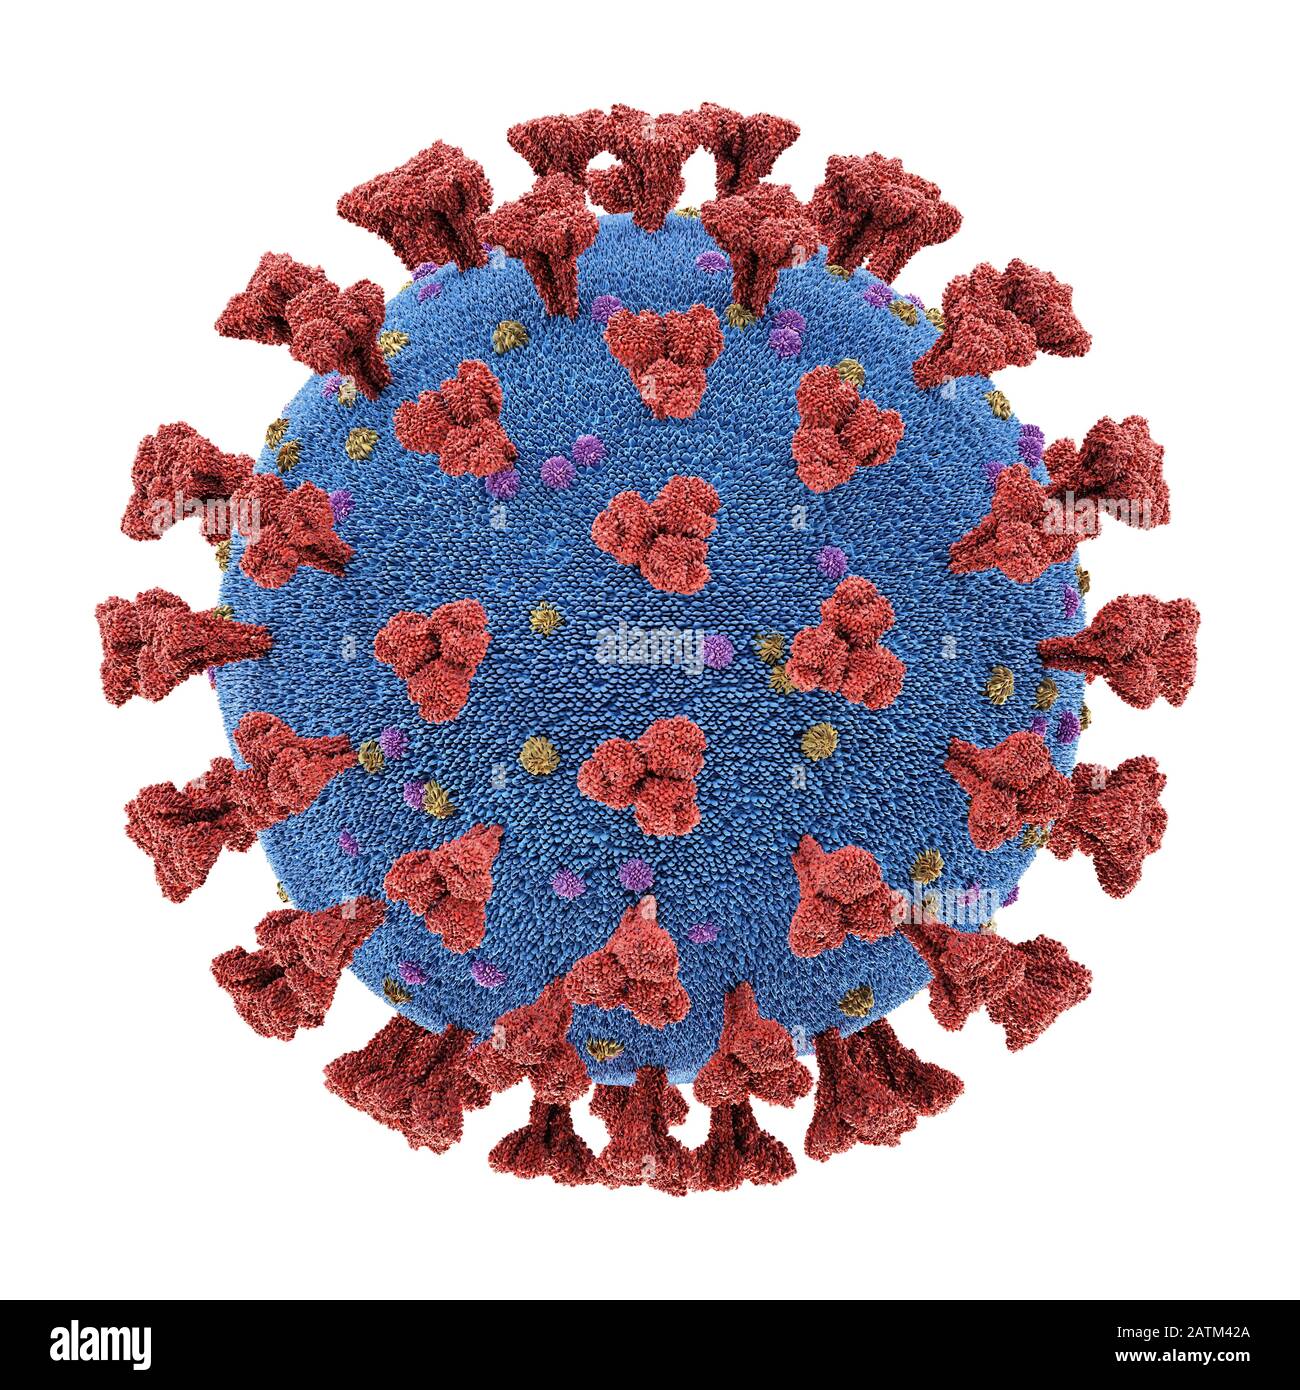 Coronavirus, eine Gruppe von Viren, die bei Säugetieren und Vögeln Krankheiten verursachen. Beim Menschen verursacht das Virus Atemwegsinfektionen. 3D-Illustration, konzeptua Stockfoto